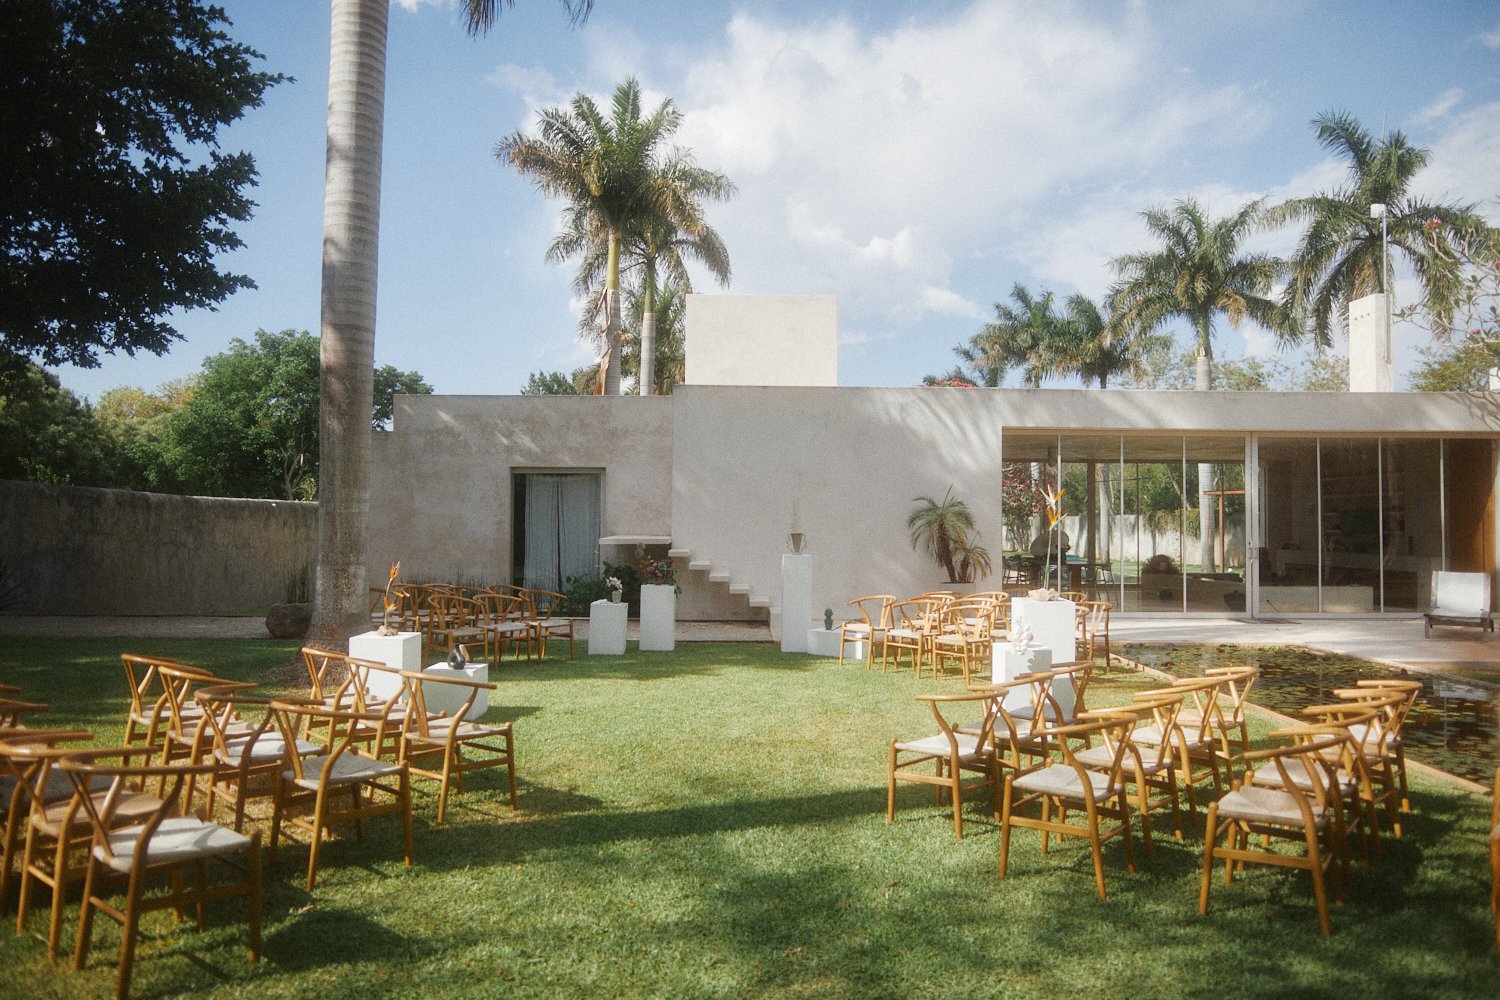 Hacienda-Sac-Chich-Merida-Mexico-Destination-Wedding-Venue-Vogue-54.JPG